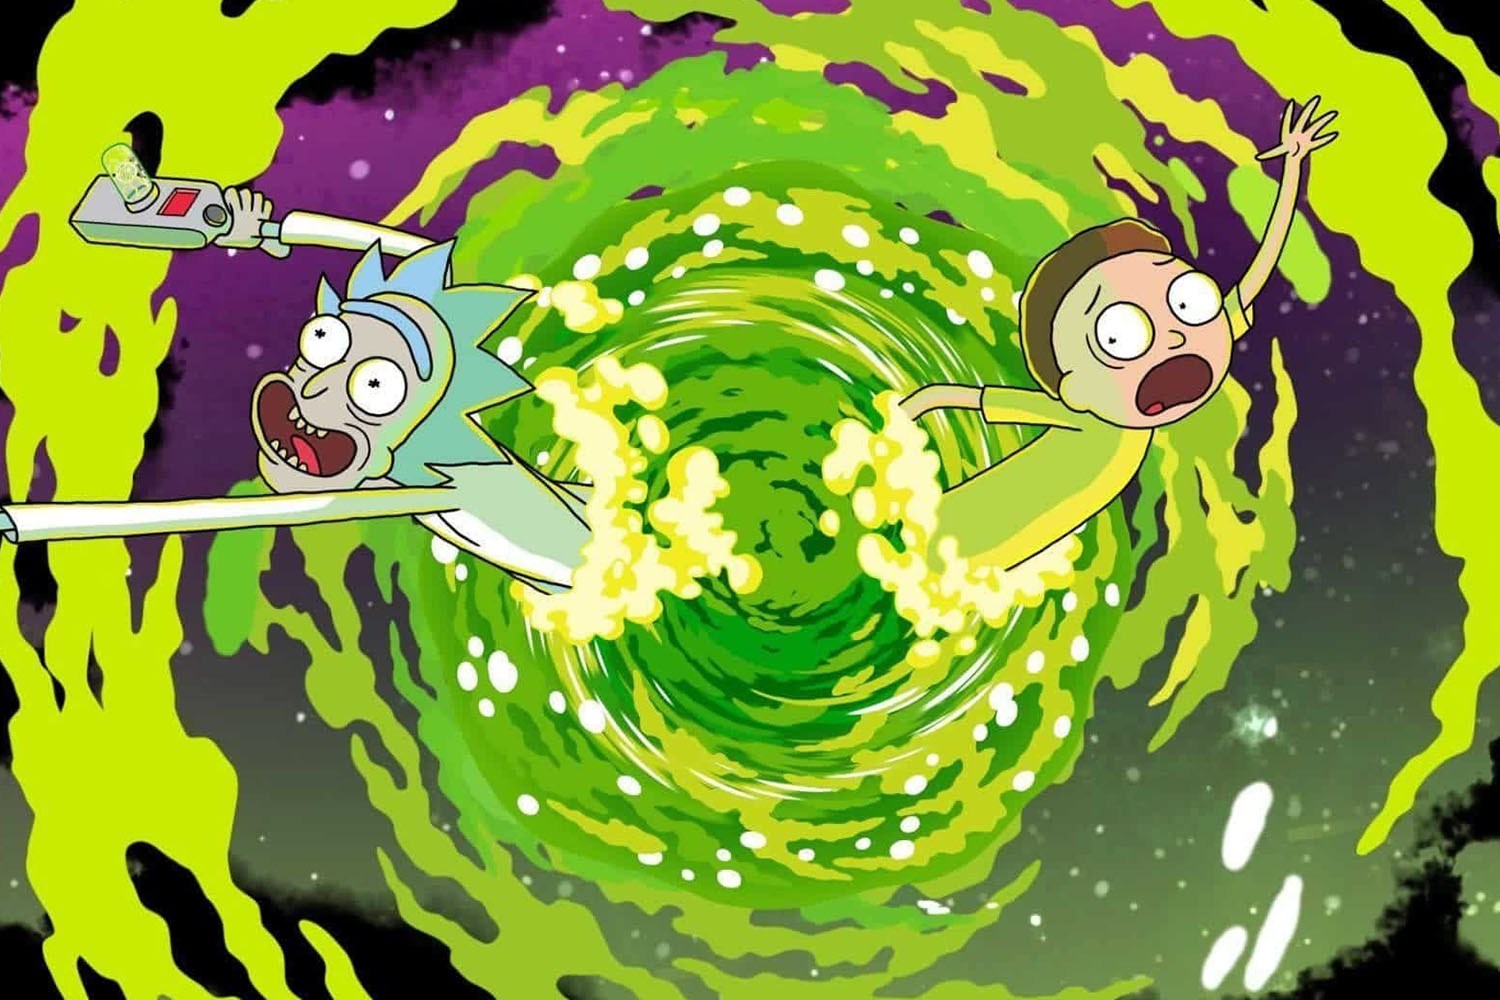 Criador e dublador de “Rick and Morty“ é demitido da série após denúncia de  violência doméstica